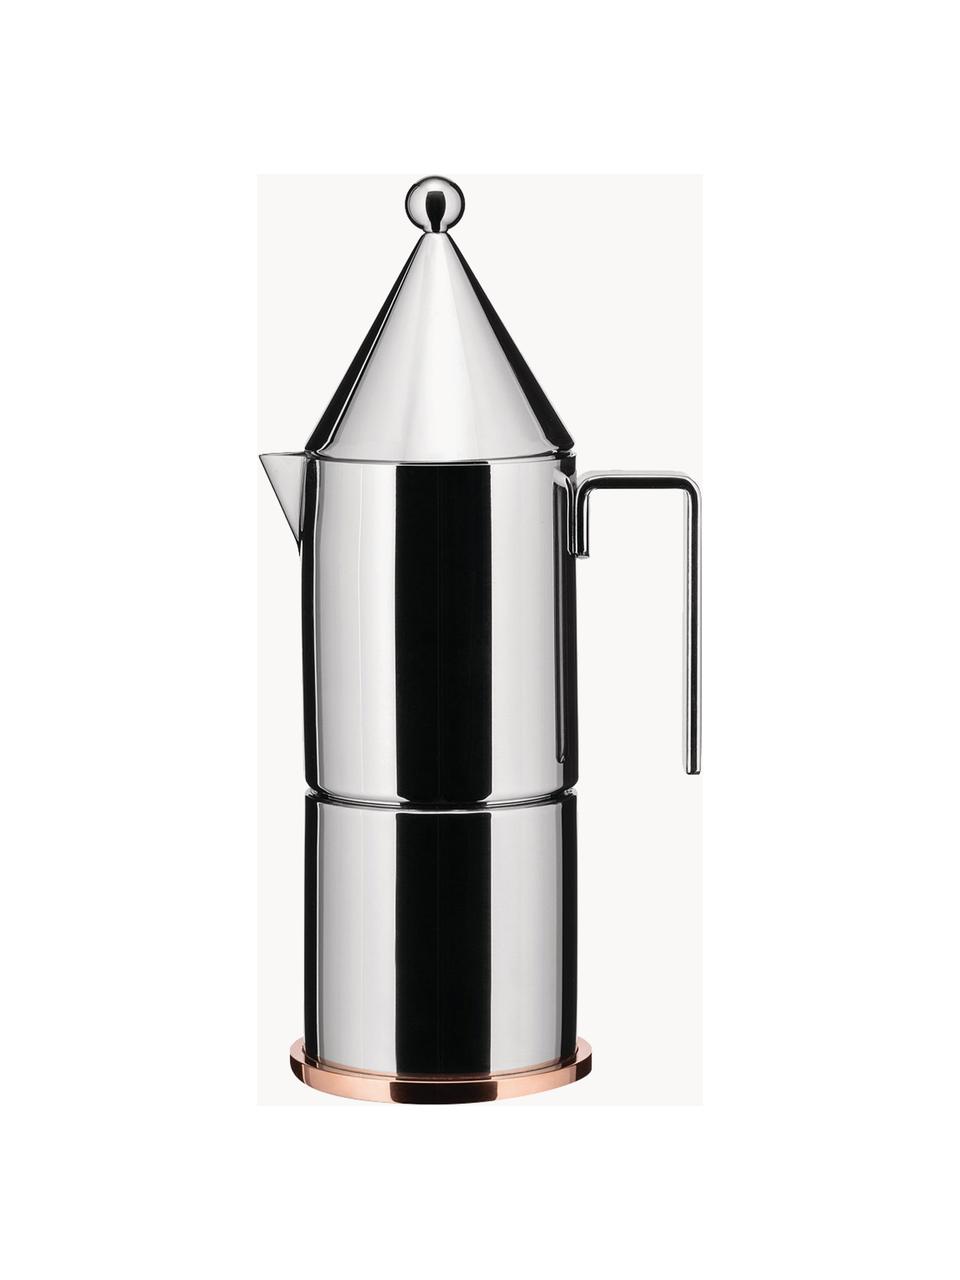 Koffiezetapparaat La Conica voor drie kopjes, Voetstuk: koper, Zilverkleurig, glanzend, Ø 8 x H 24 cm